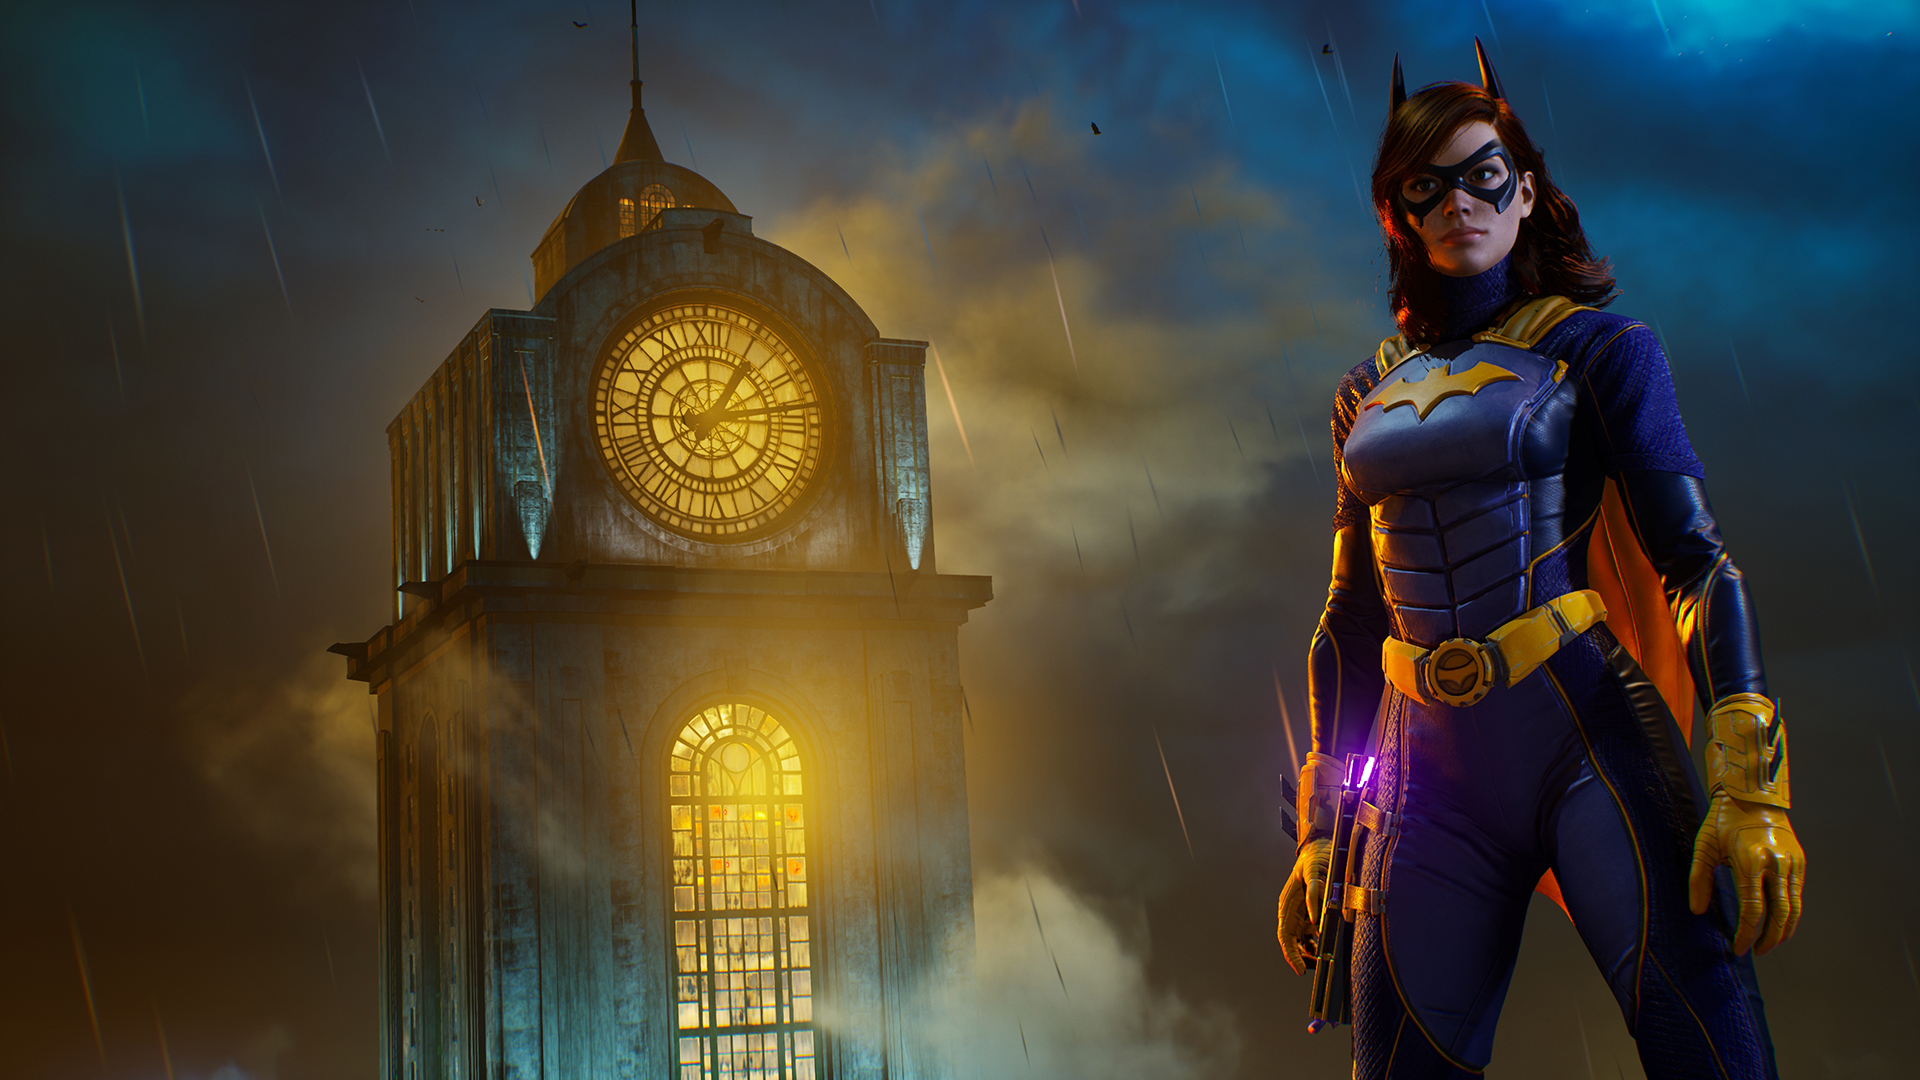 Gotham Knights เลื่อนวางจำหน่ายออกไปเป็นปี 2022